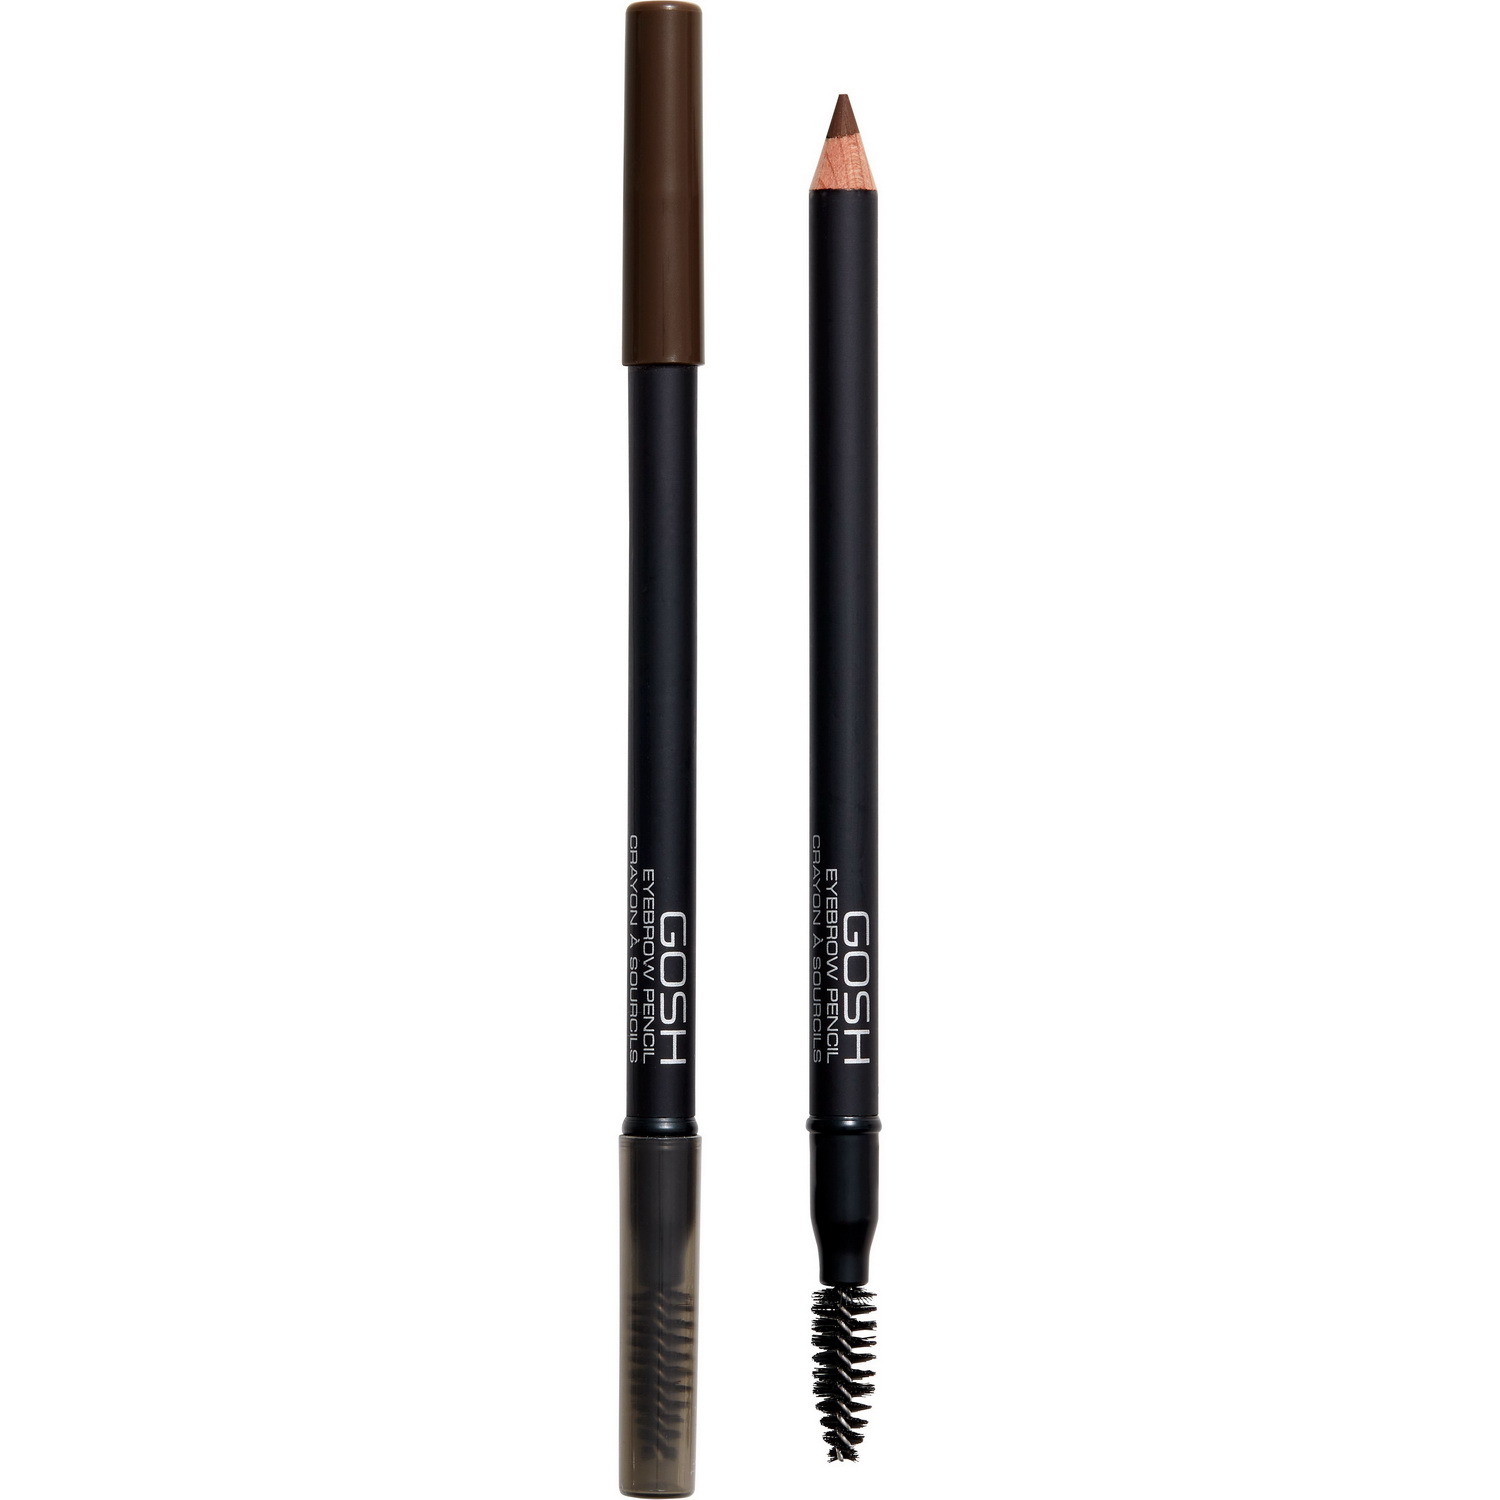 Олівець для брів Gosh Eye Brow Pencil Dark Brown тон 05, 1.2 г - фото 1